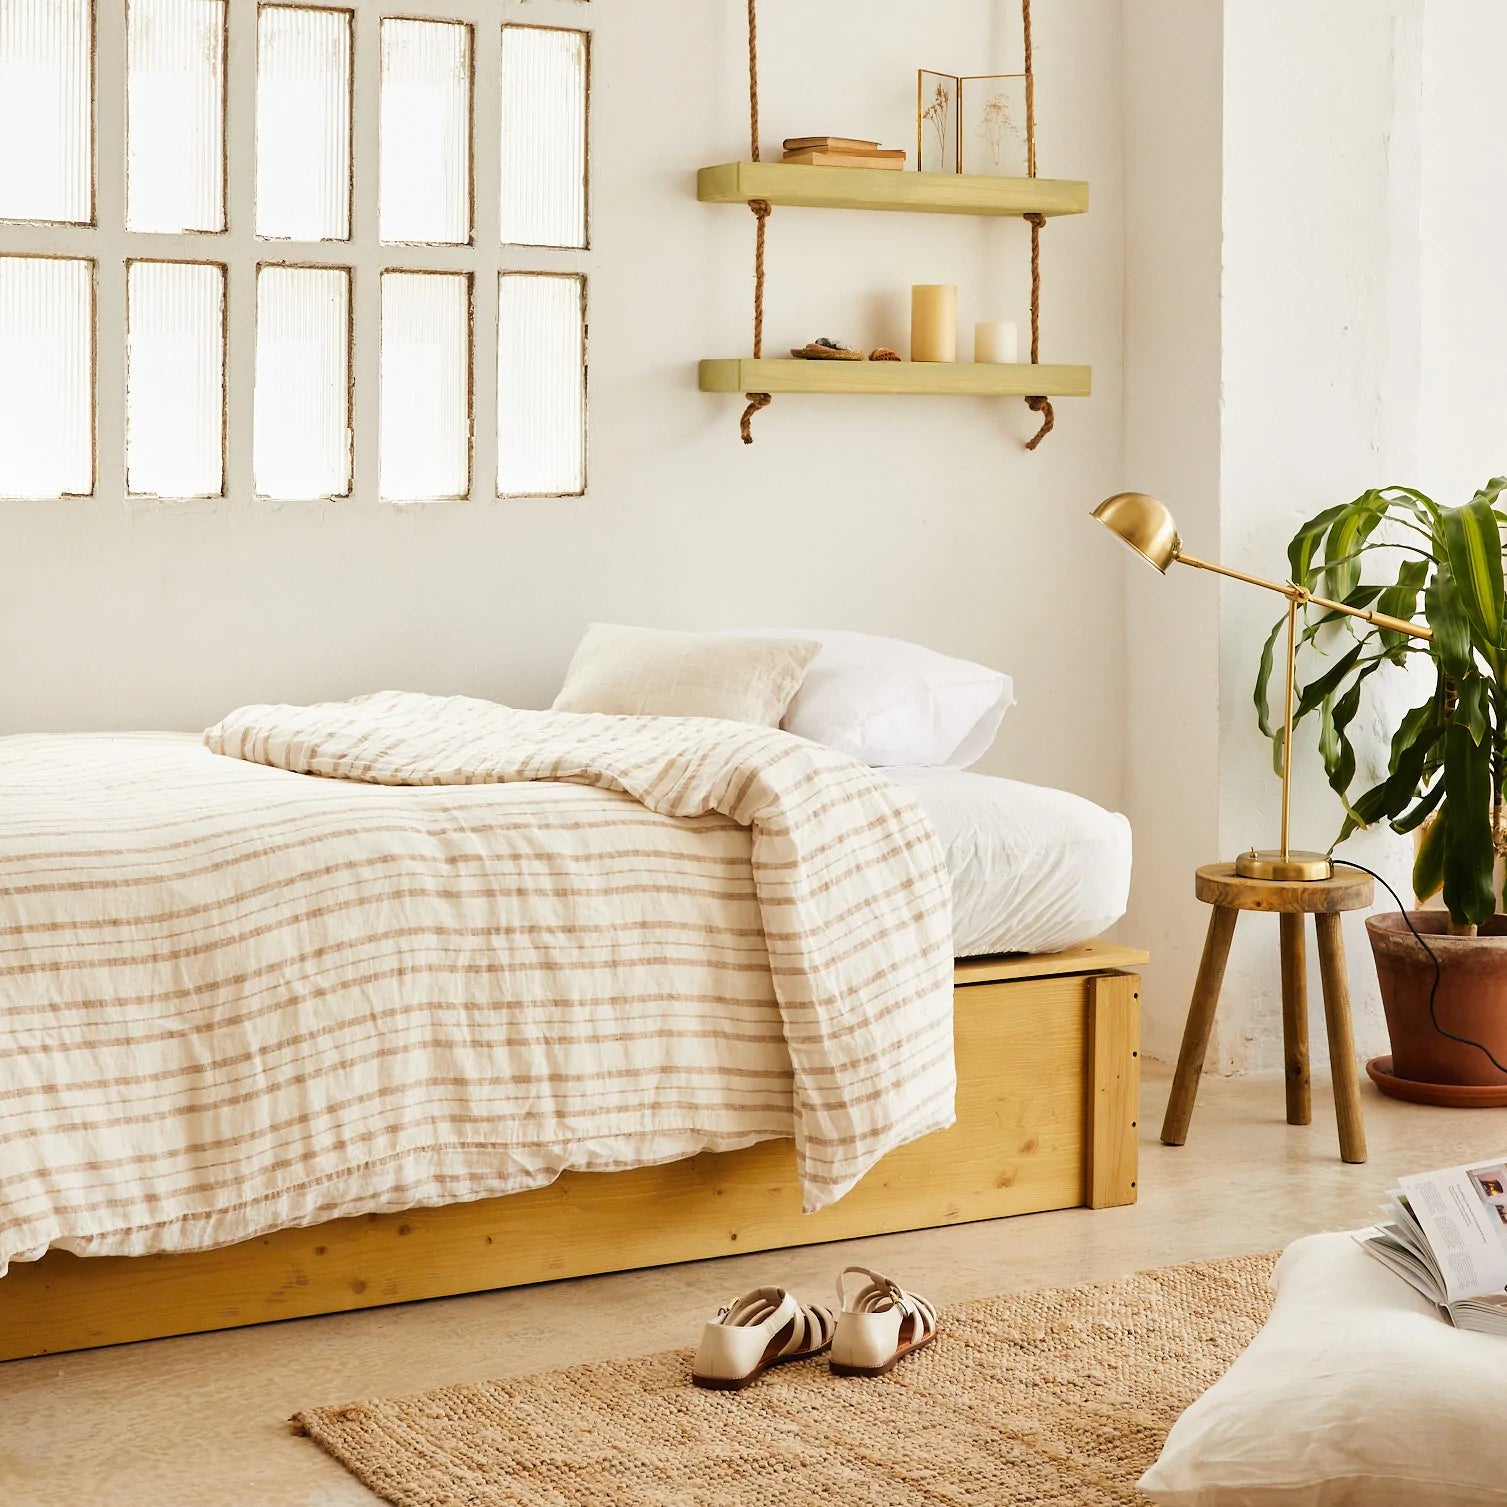 20 ideas para aprovechar el espacio que no se ve del dormitorio